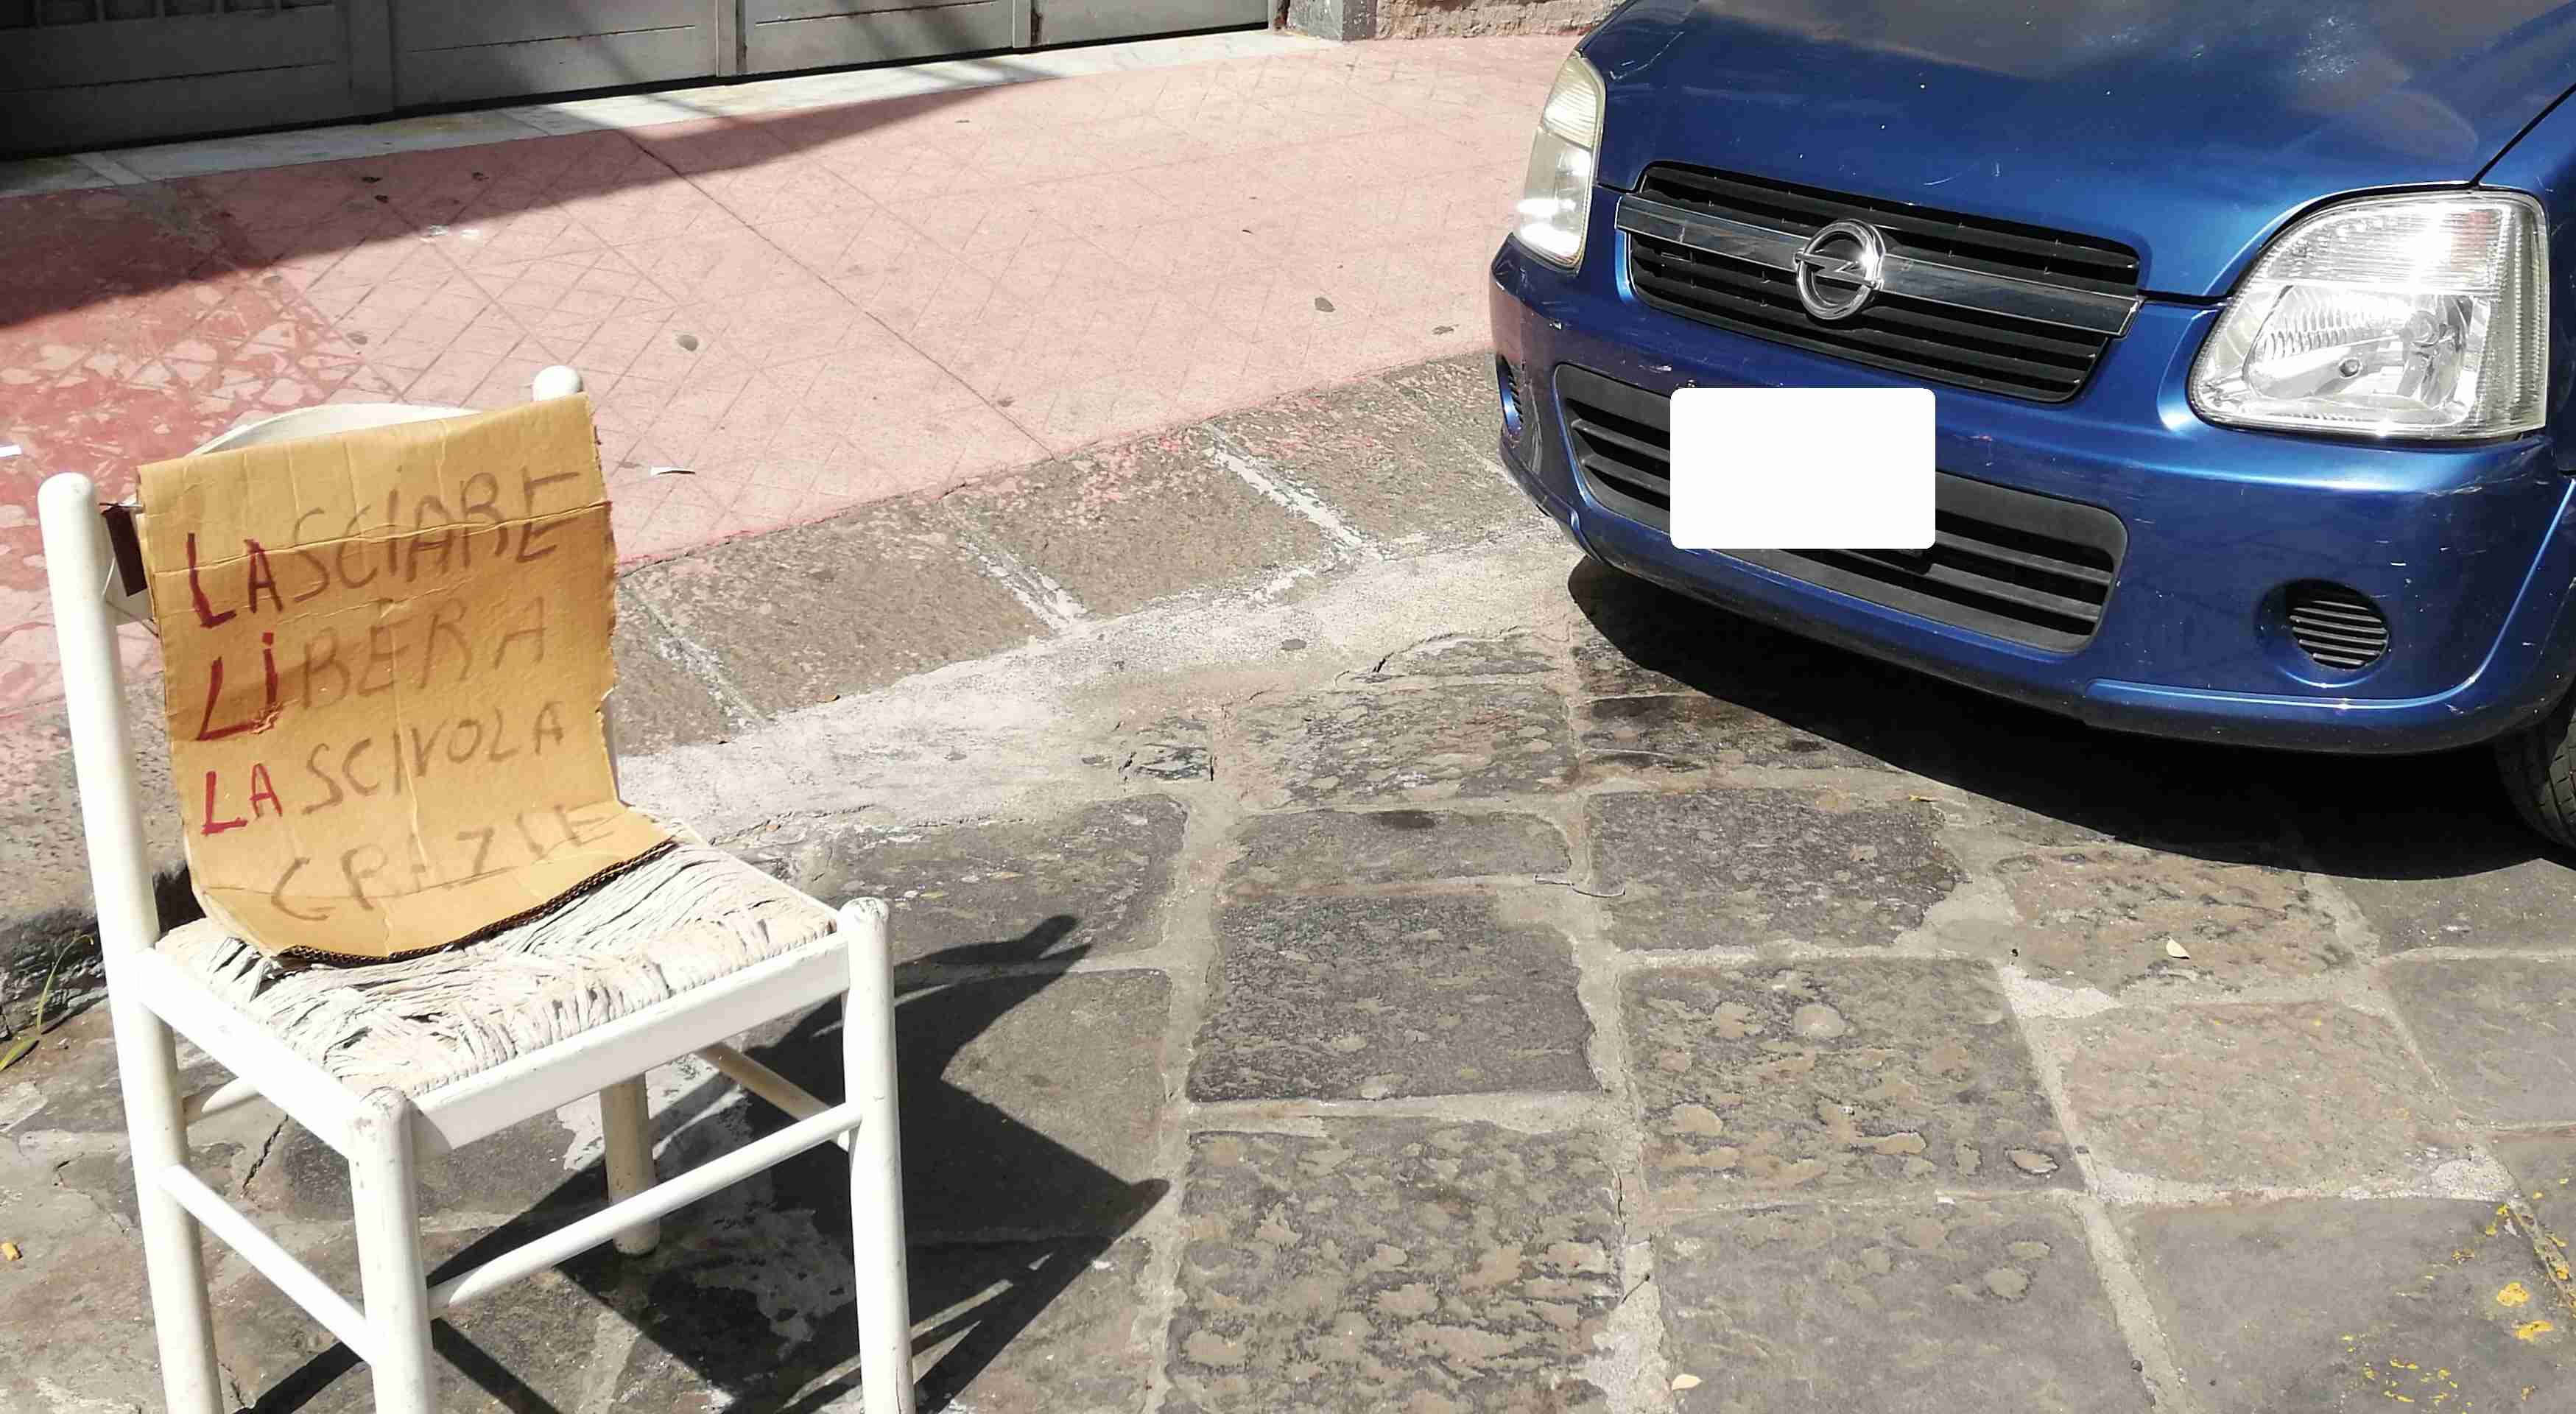 Parcheggio selvaggio a Catania, si chiedono soluzioni